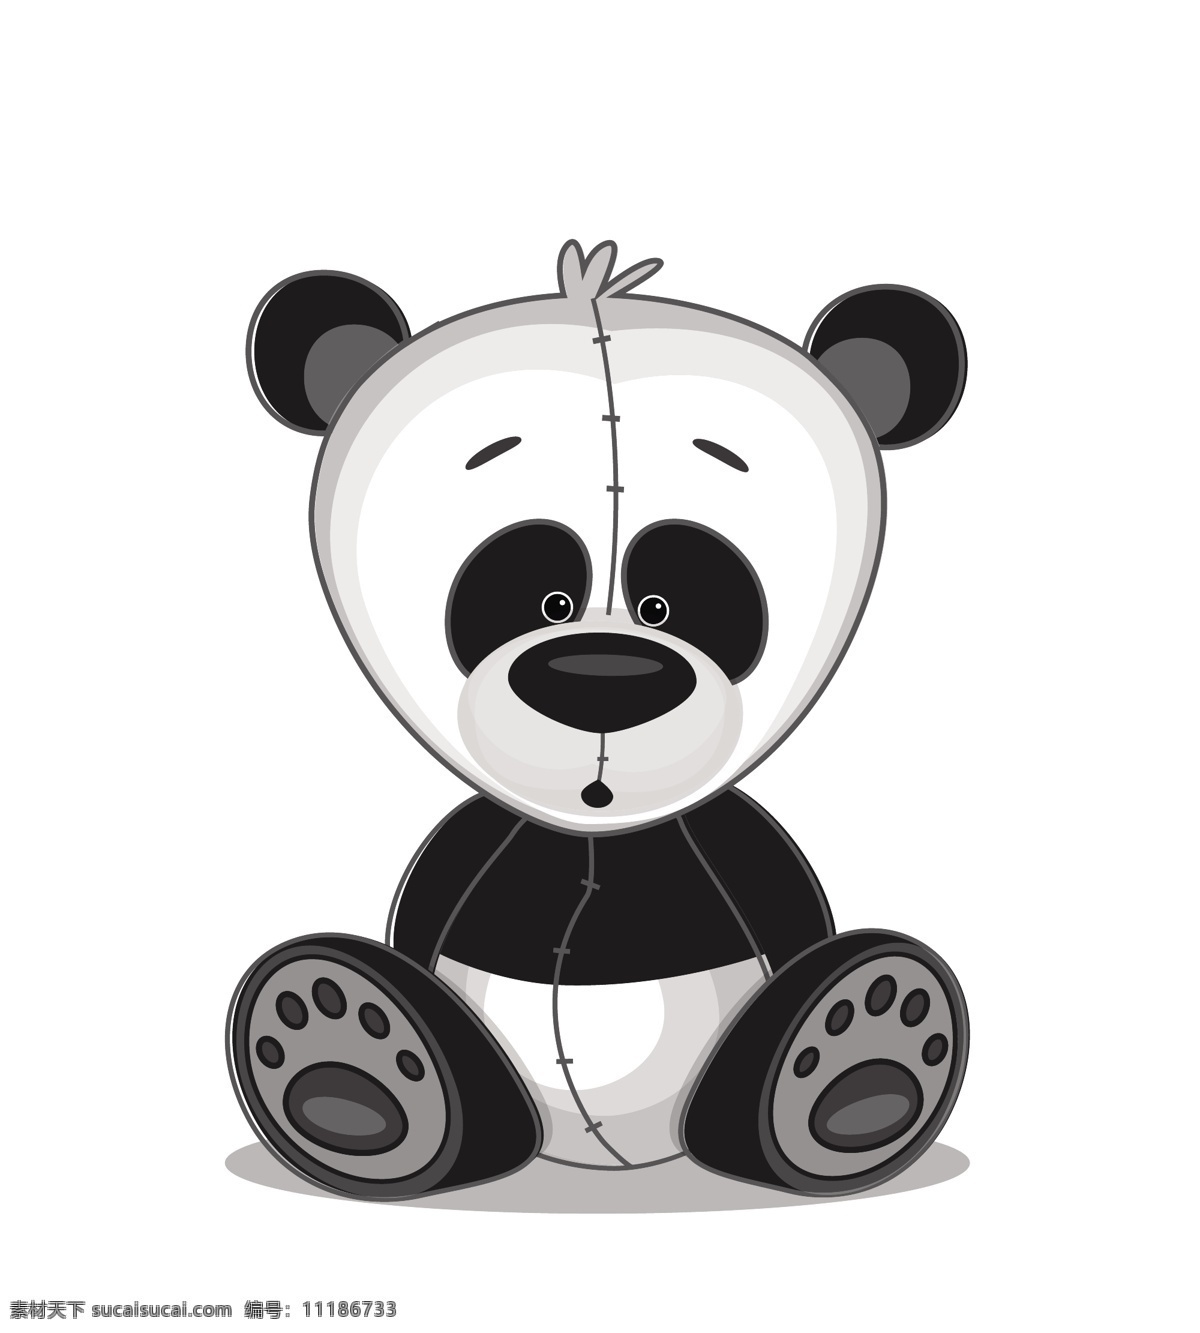 矢量 可爱 熊猫 卡通 素材图片 矢量素材 动物 卡通动物 矢量动物 野生动物